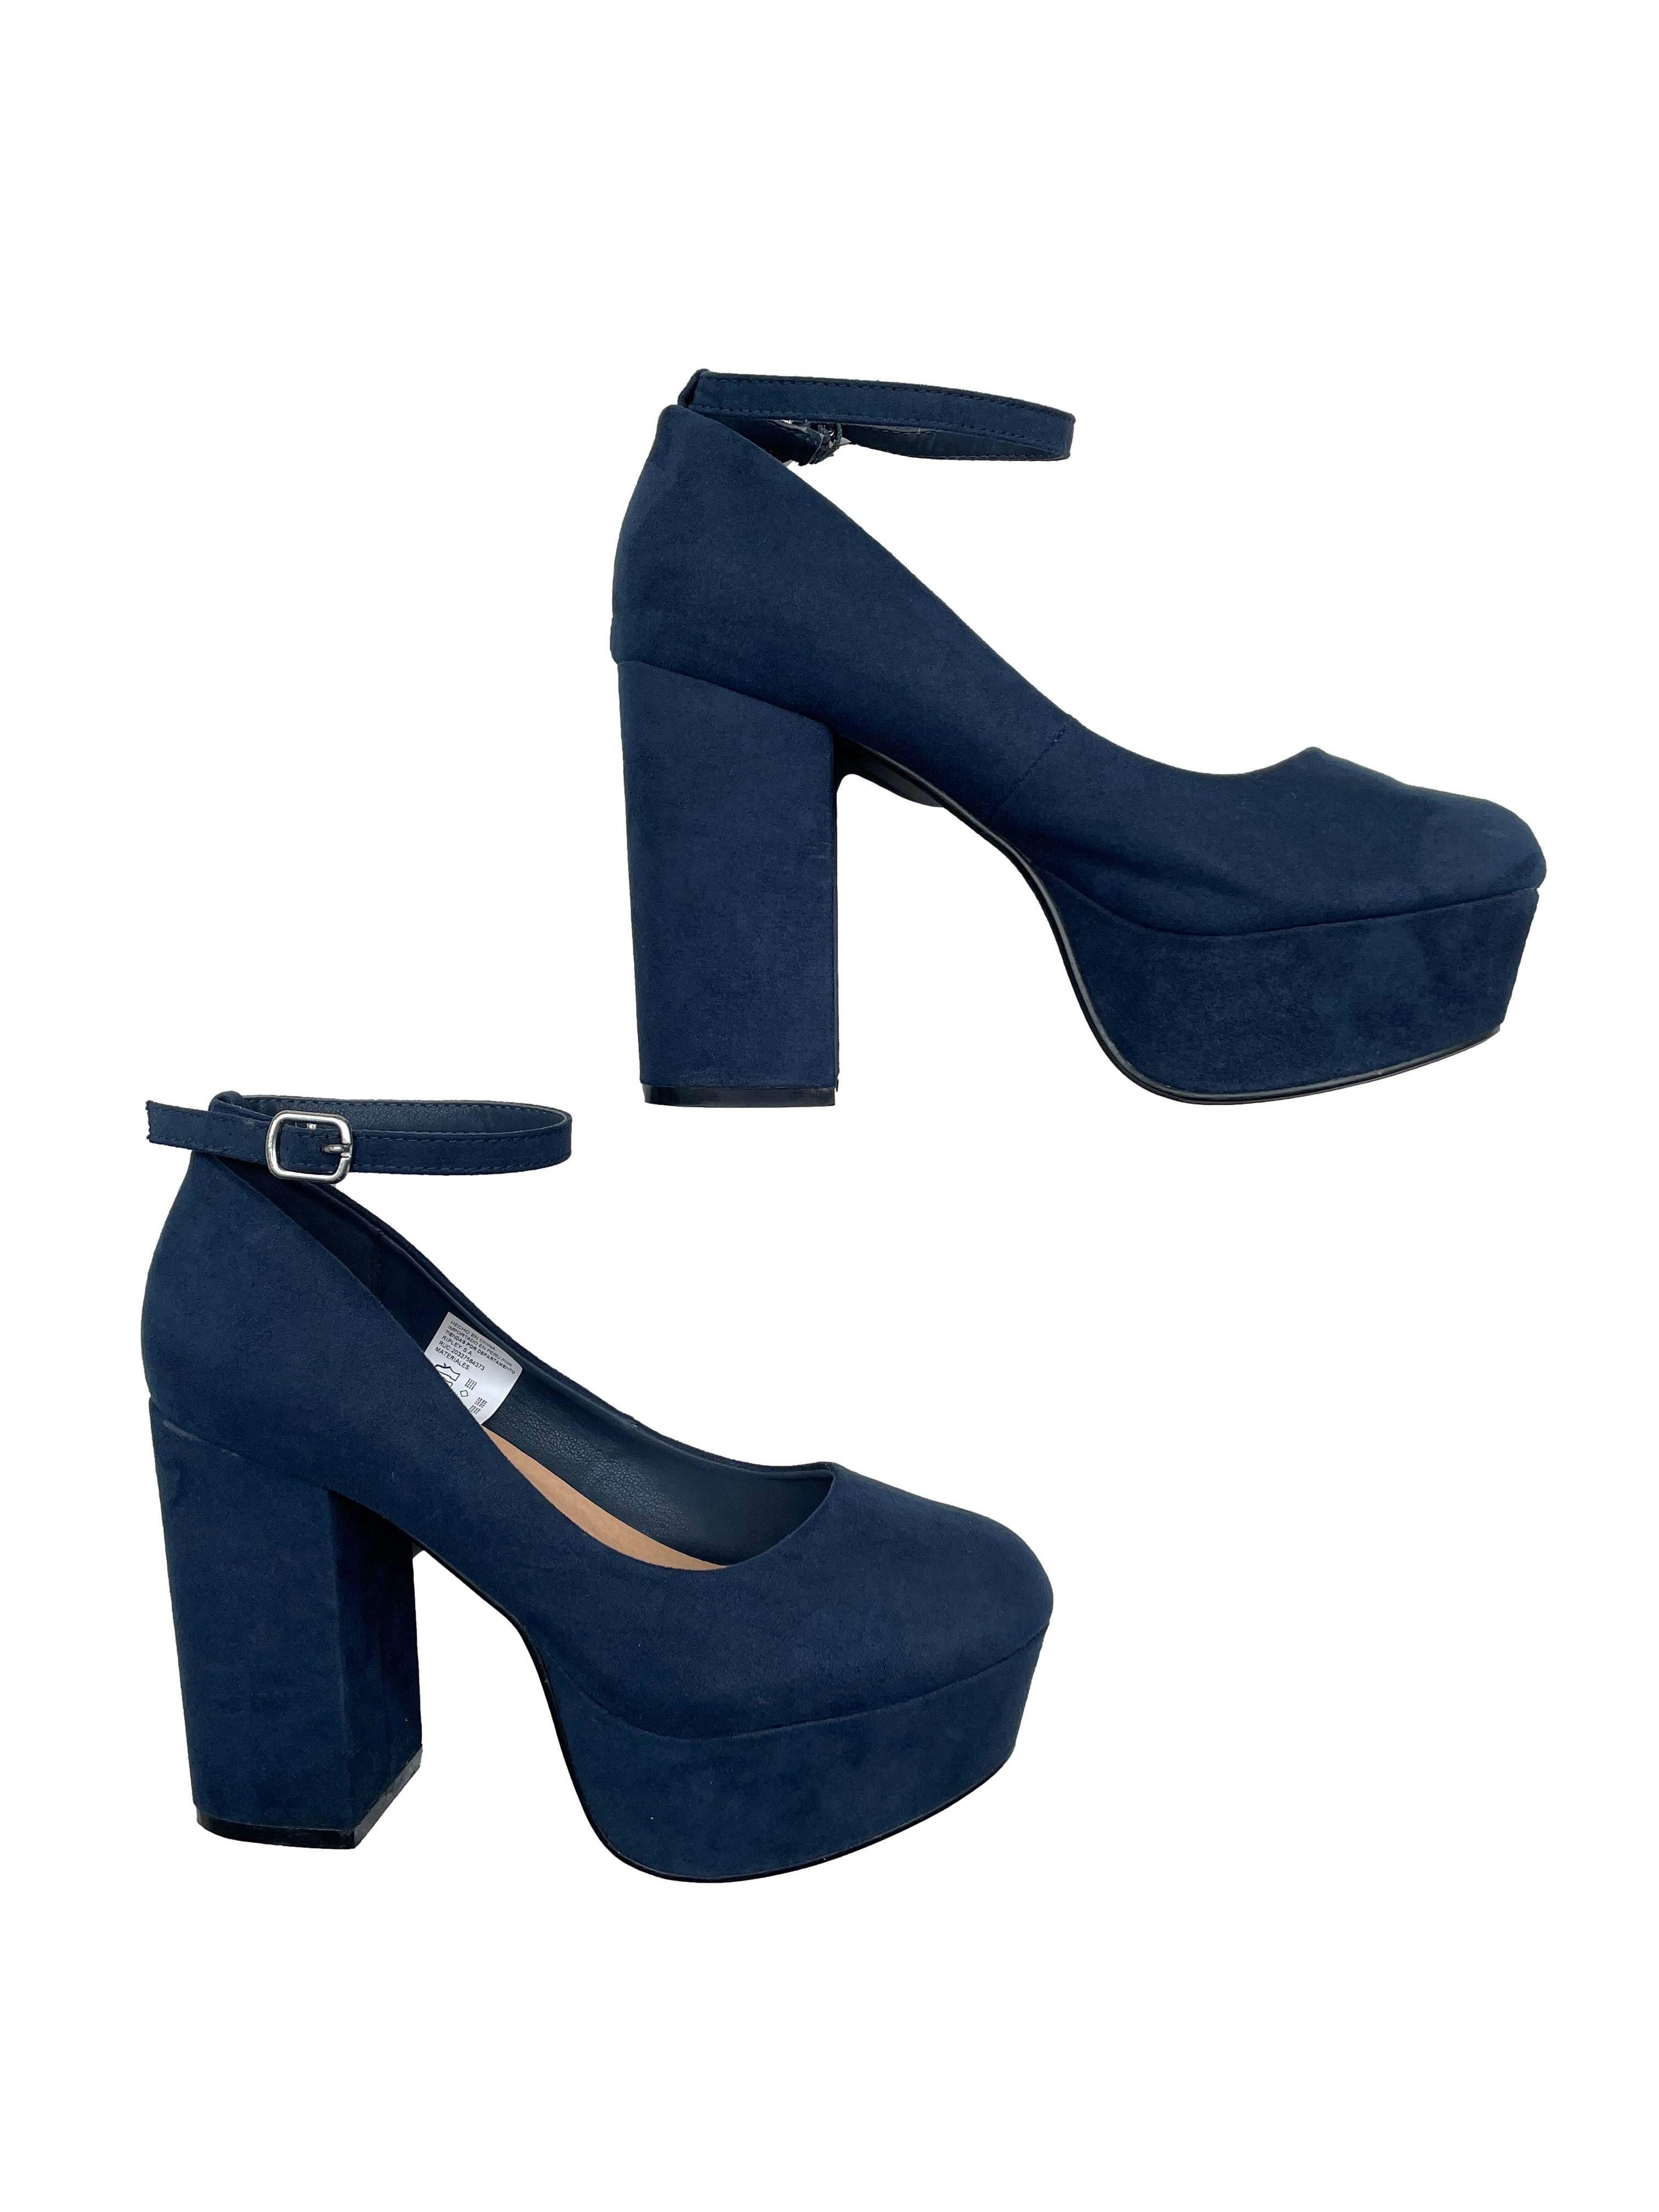 Zapatos Index azul marino tipo gamuza, modelo con correa tobillo, taco 11cm, plataforma Estado | Las Traperas